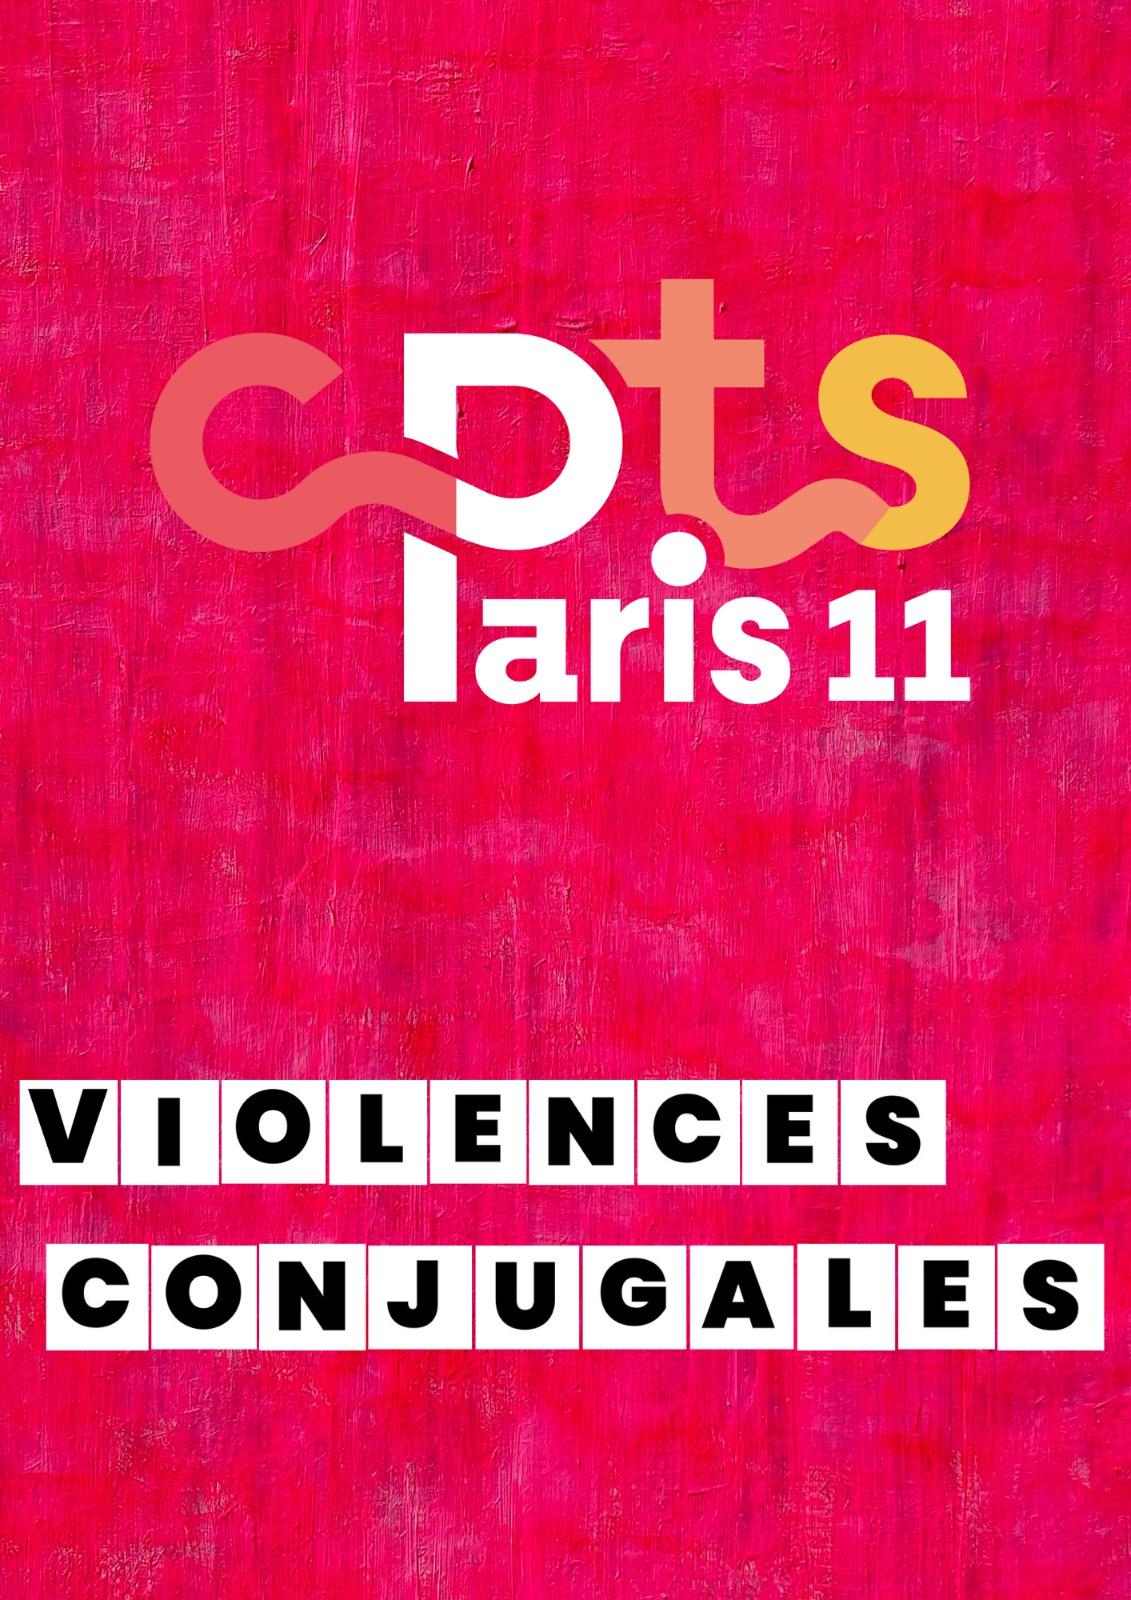 Conférence sur les violences conjugales CPTS Paris 11